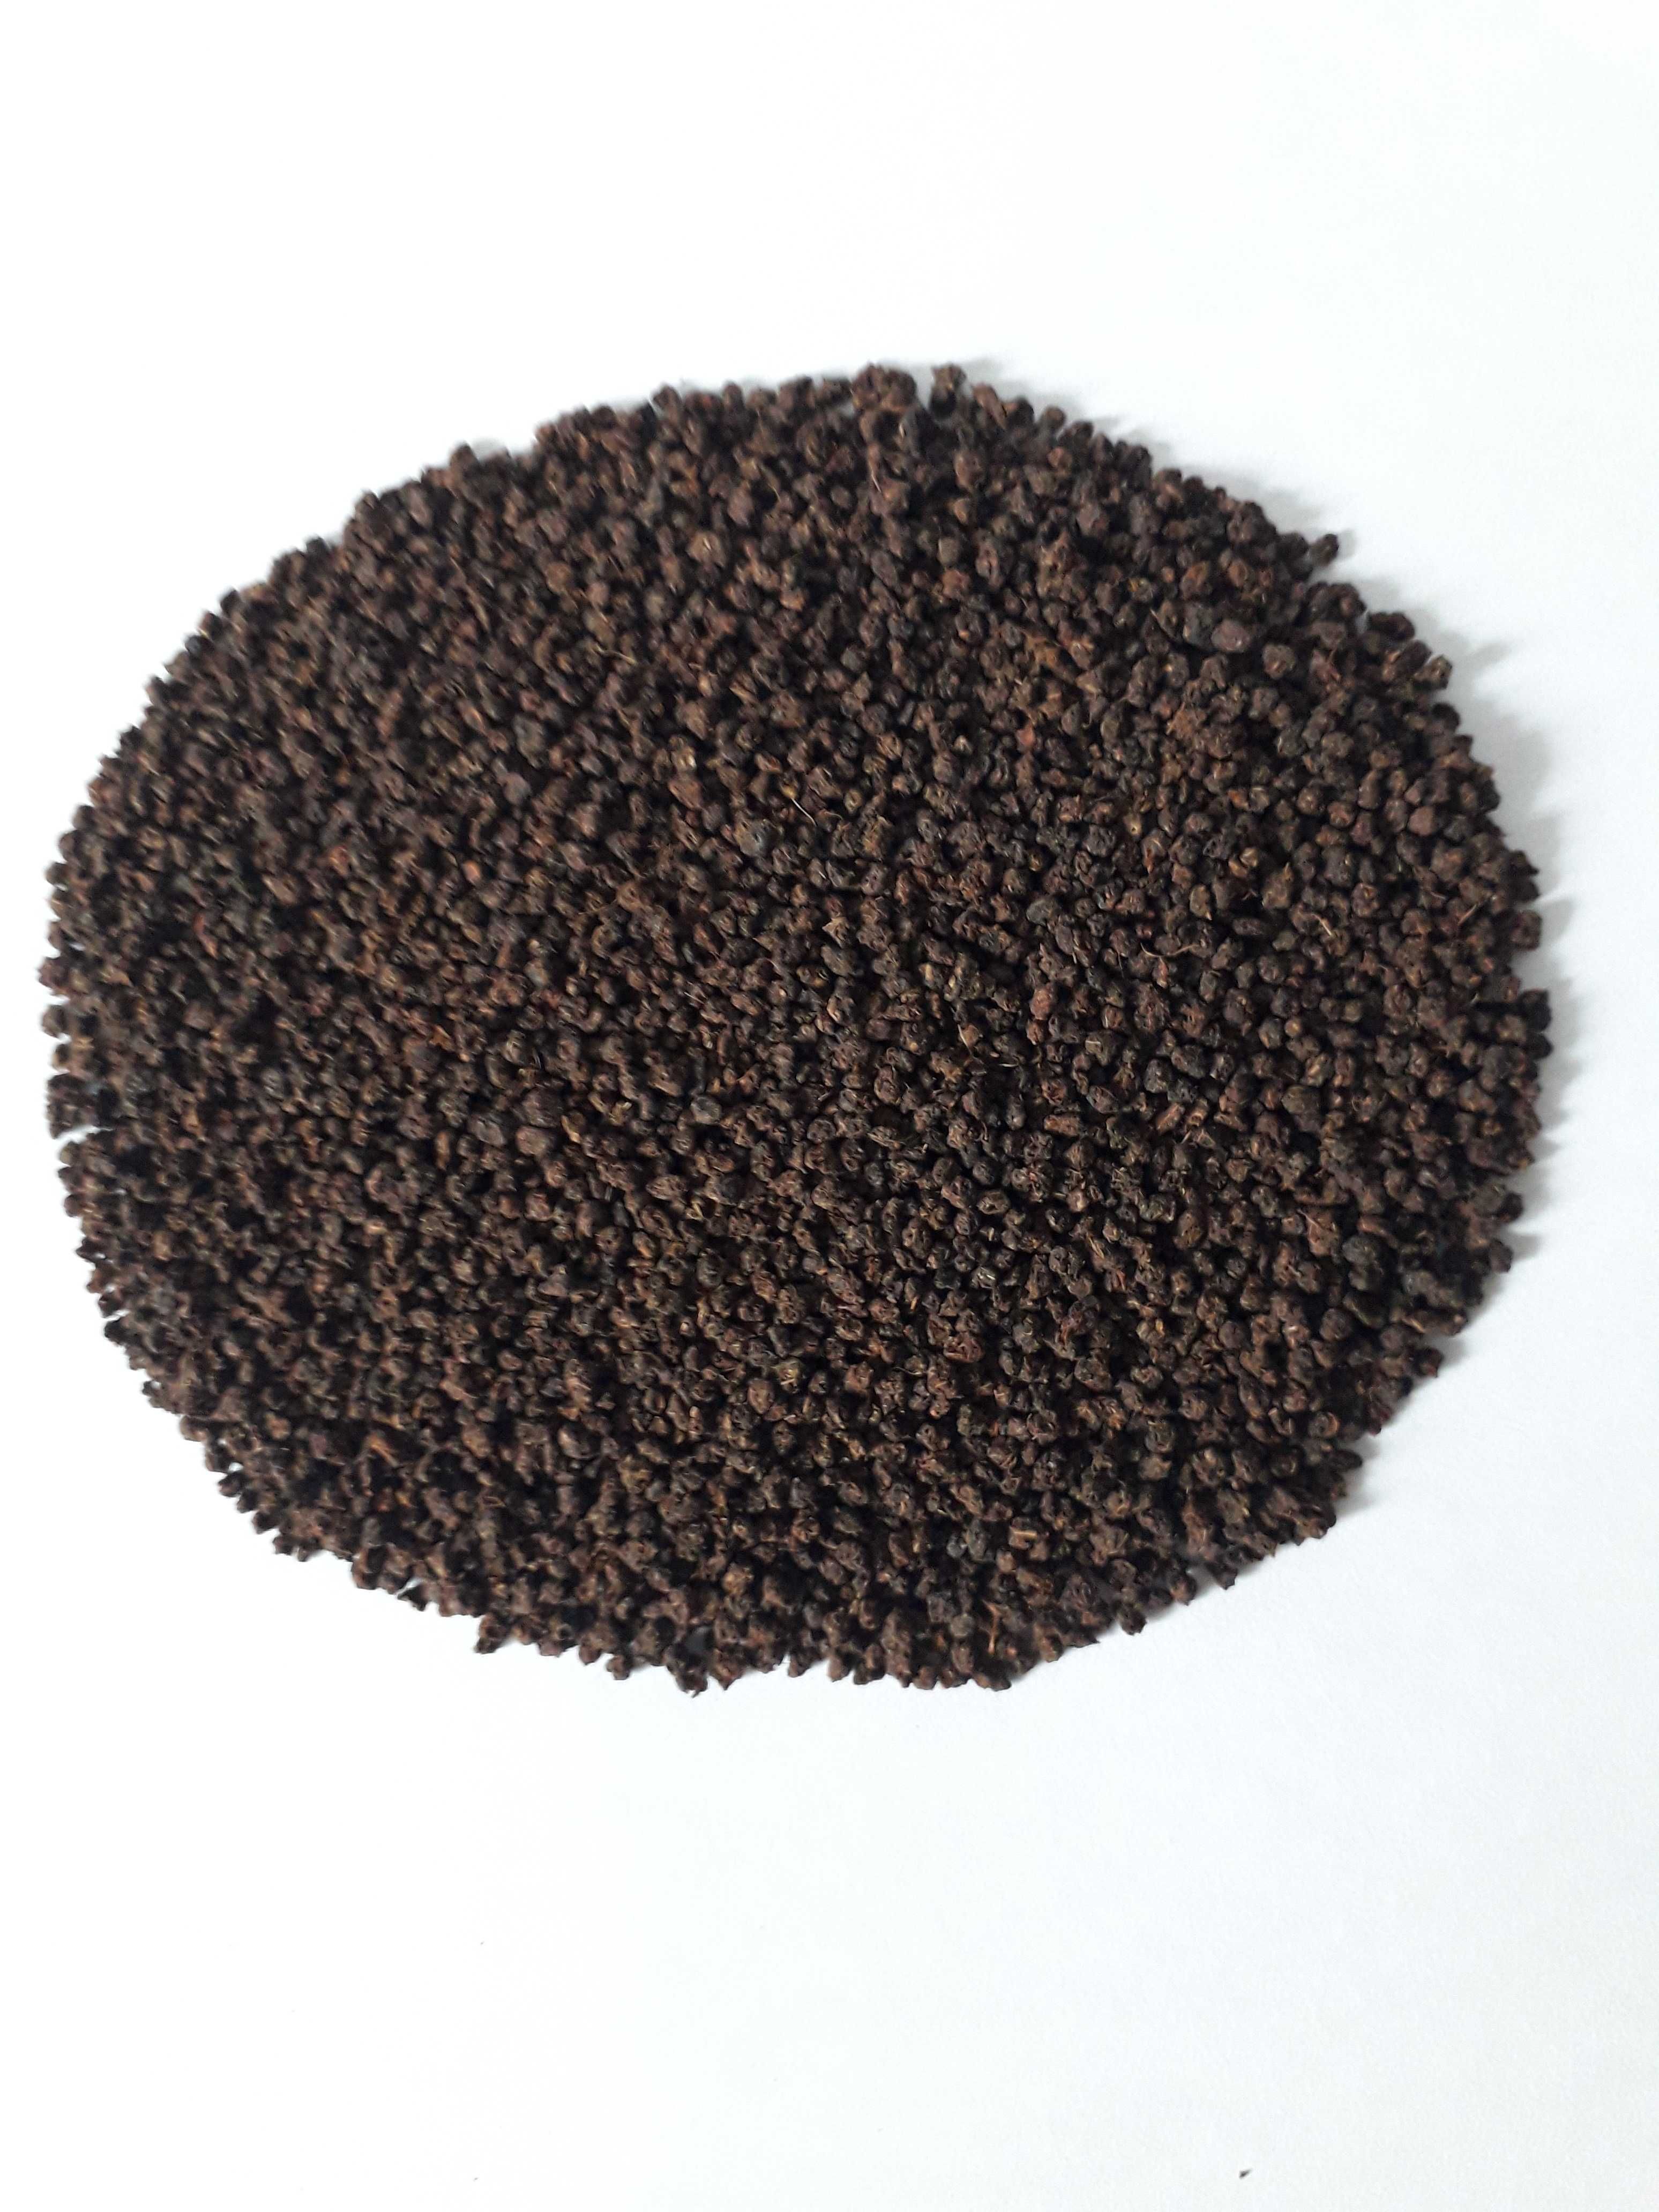 Чорний цейлонський чай СТС (Черный цейлонский чай СТС)